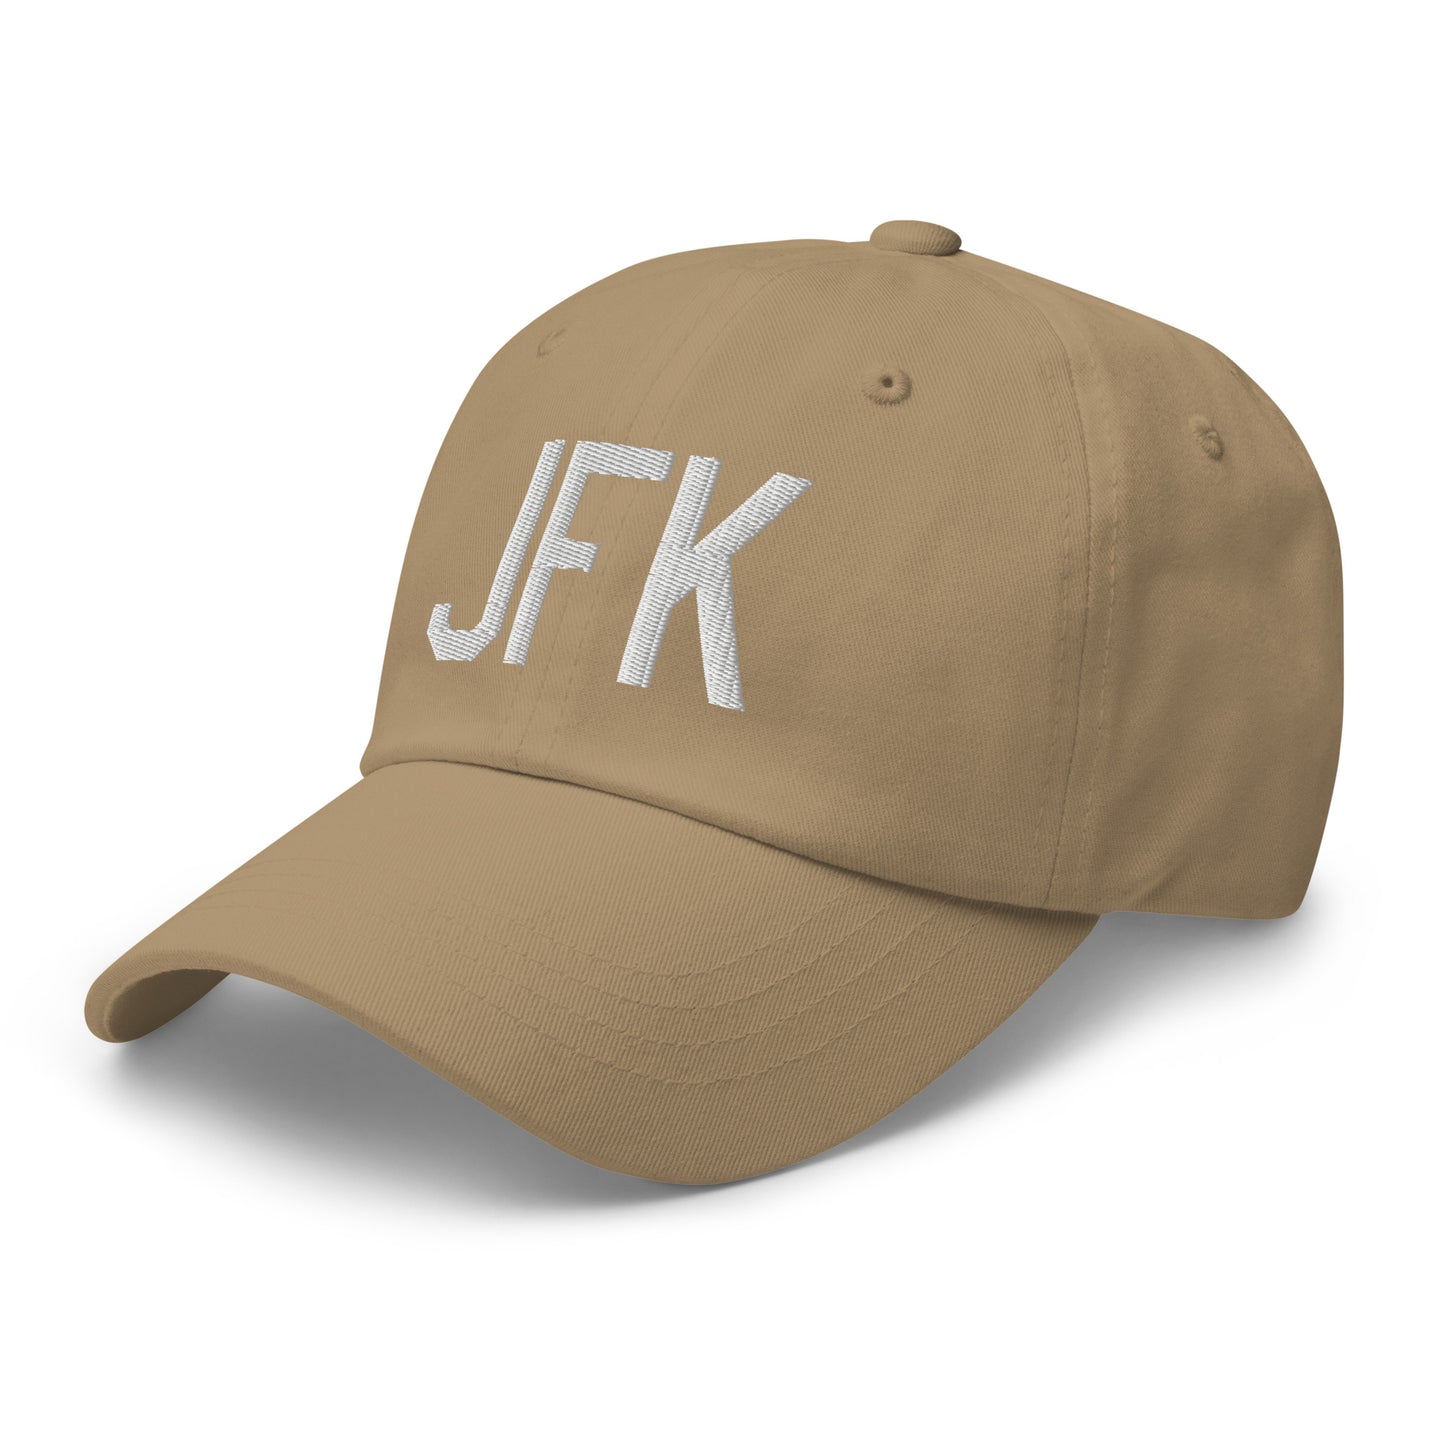 Airport Code Baseball Cap - White • JFK New York City • YHM Designs - Image 24